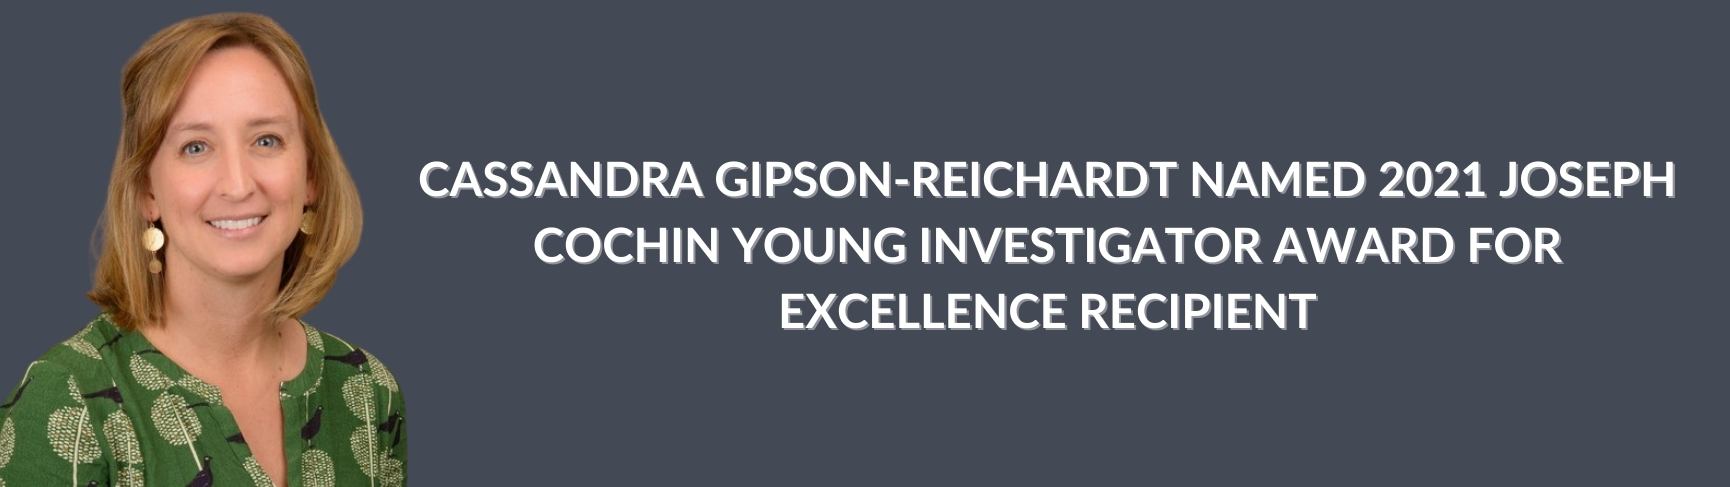 Gipson-Reichardt Cochin Winner - Header Image